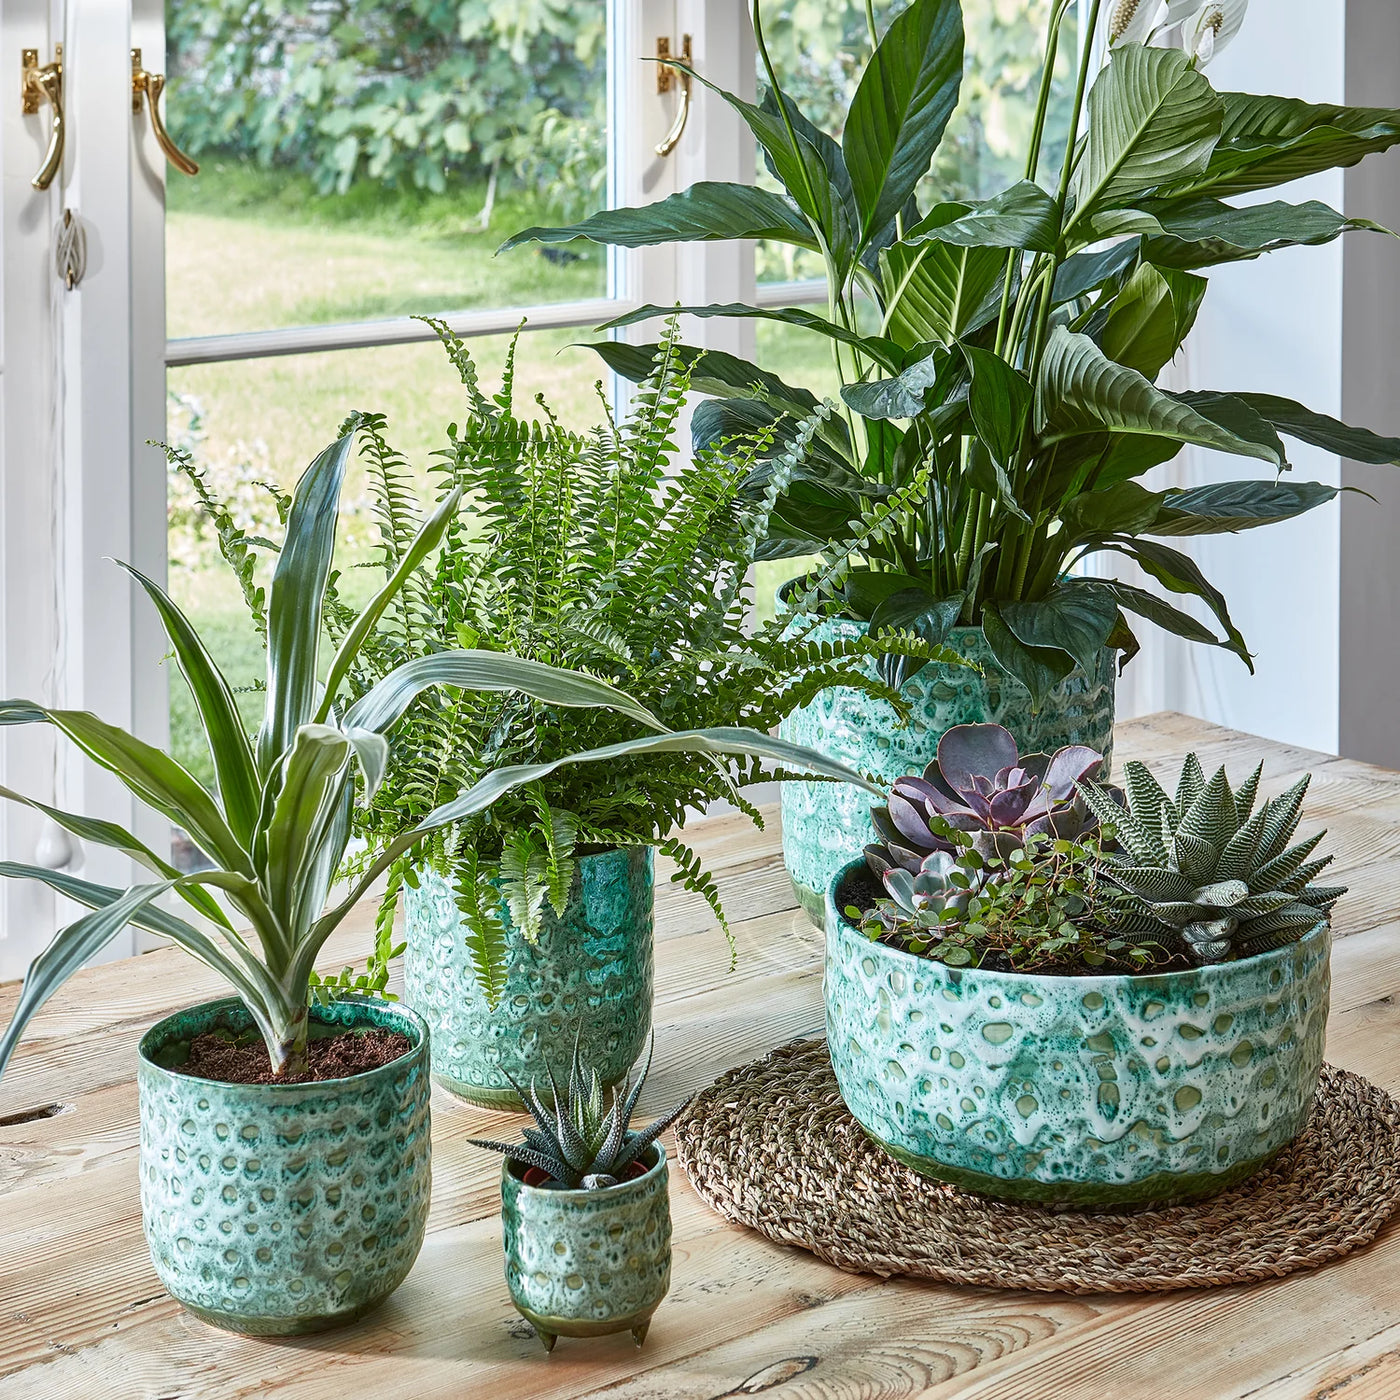 Reactive Glaze Planter (Emerald 13cm Plant Pot)